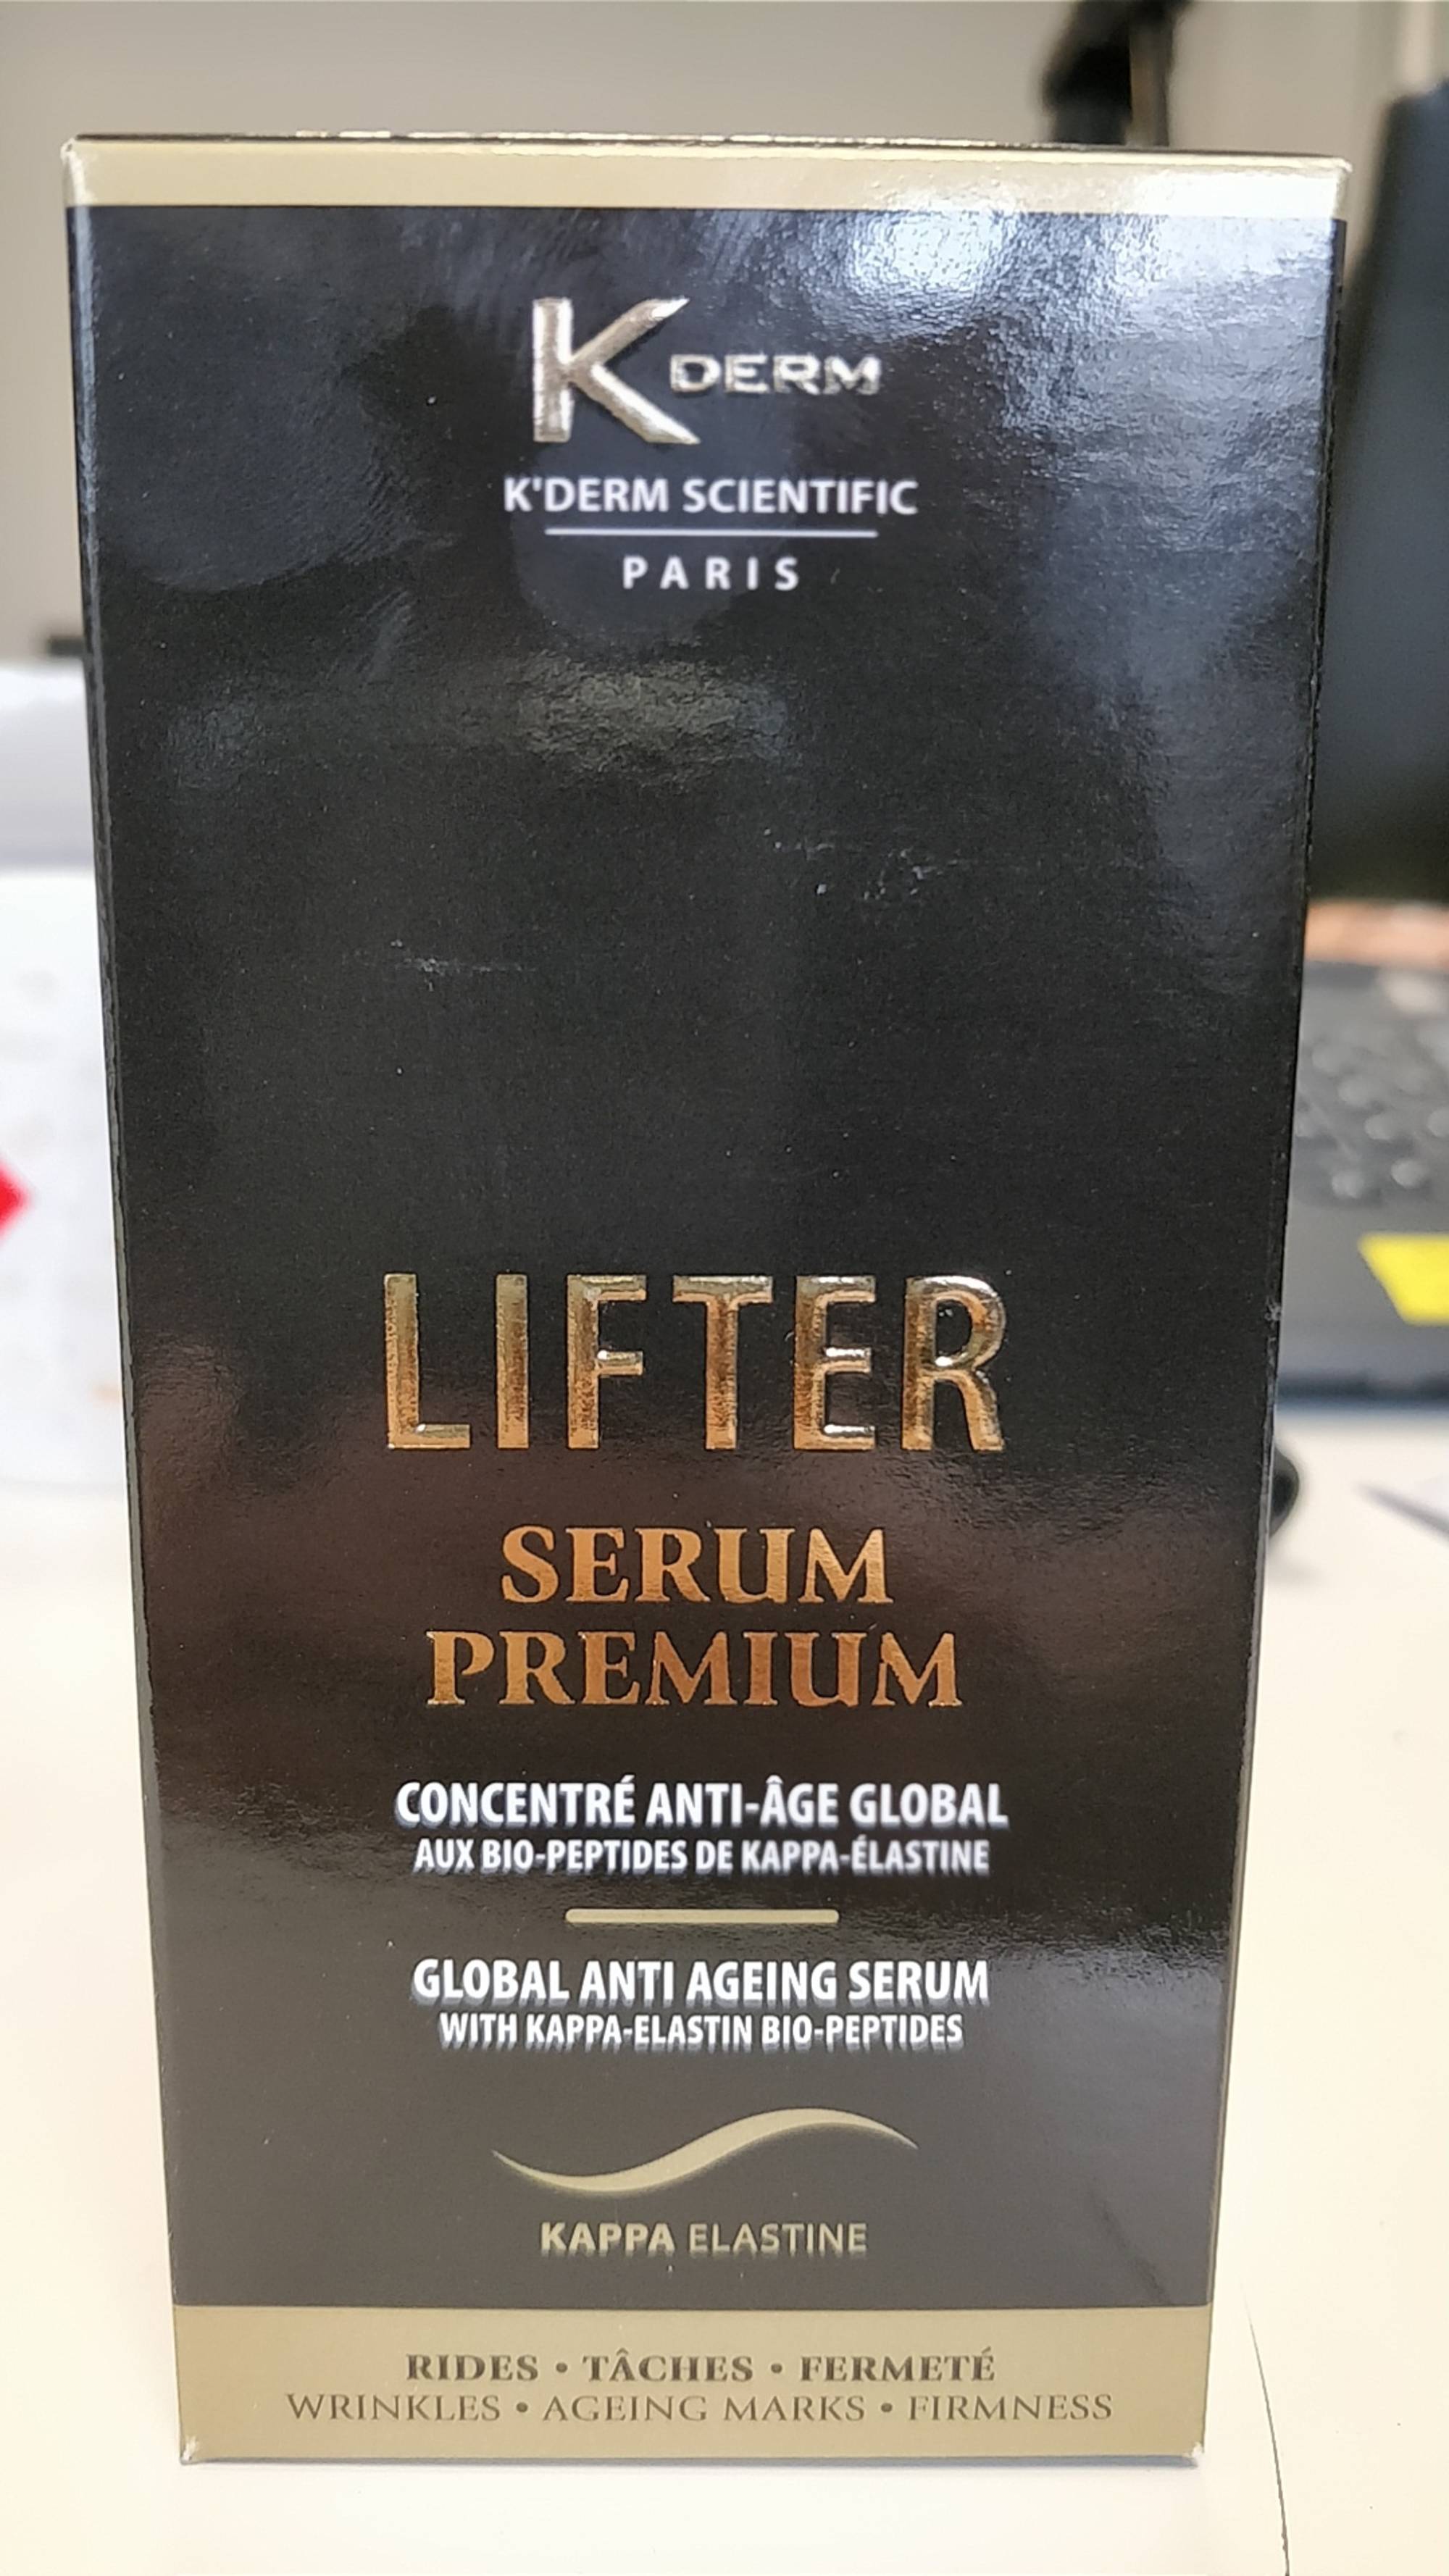 K DERM - Lifter sérum premium - Concentré anti-âge global